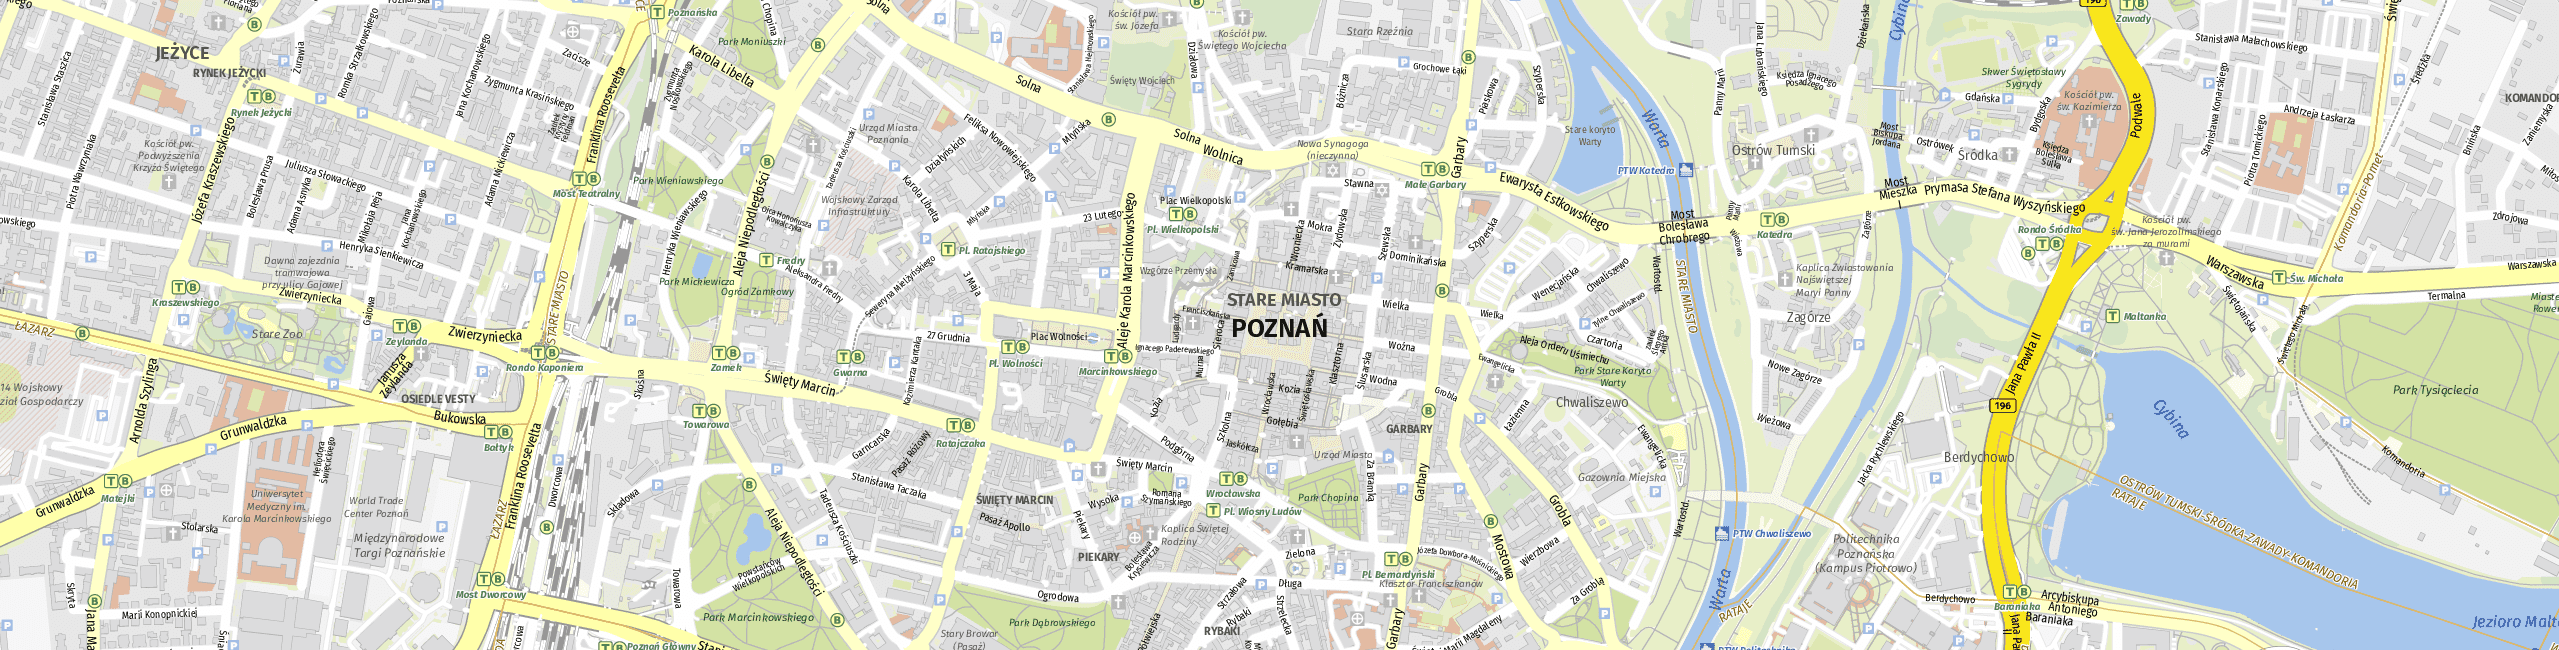 Stadtplan Poznań zum Downloaden.